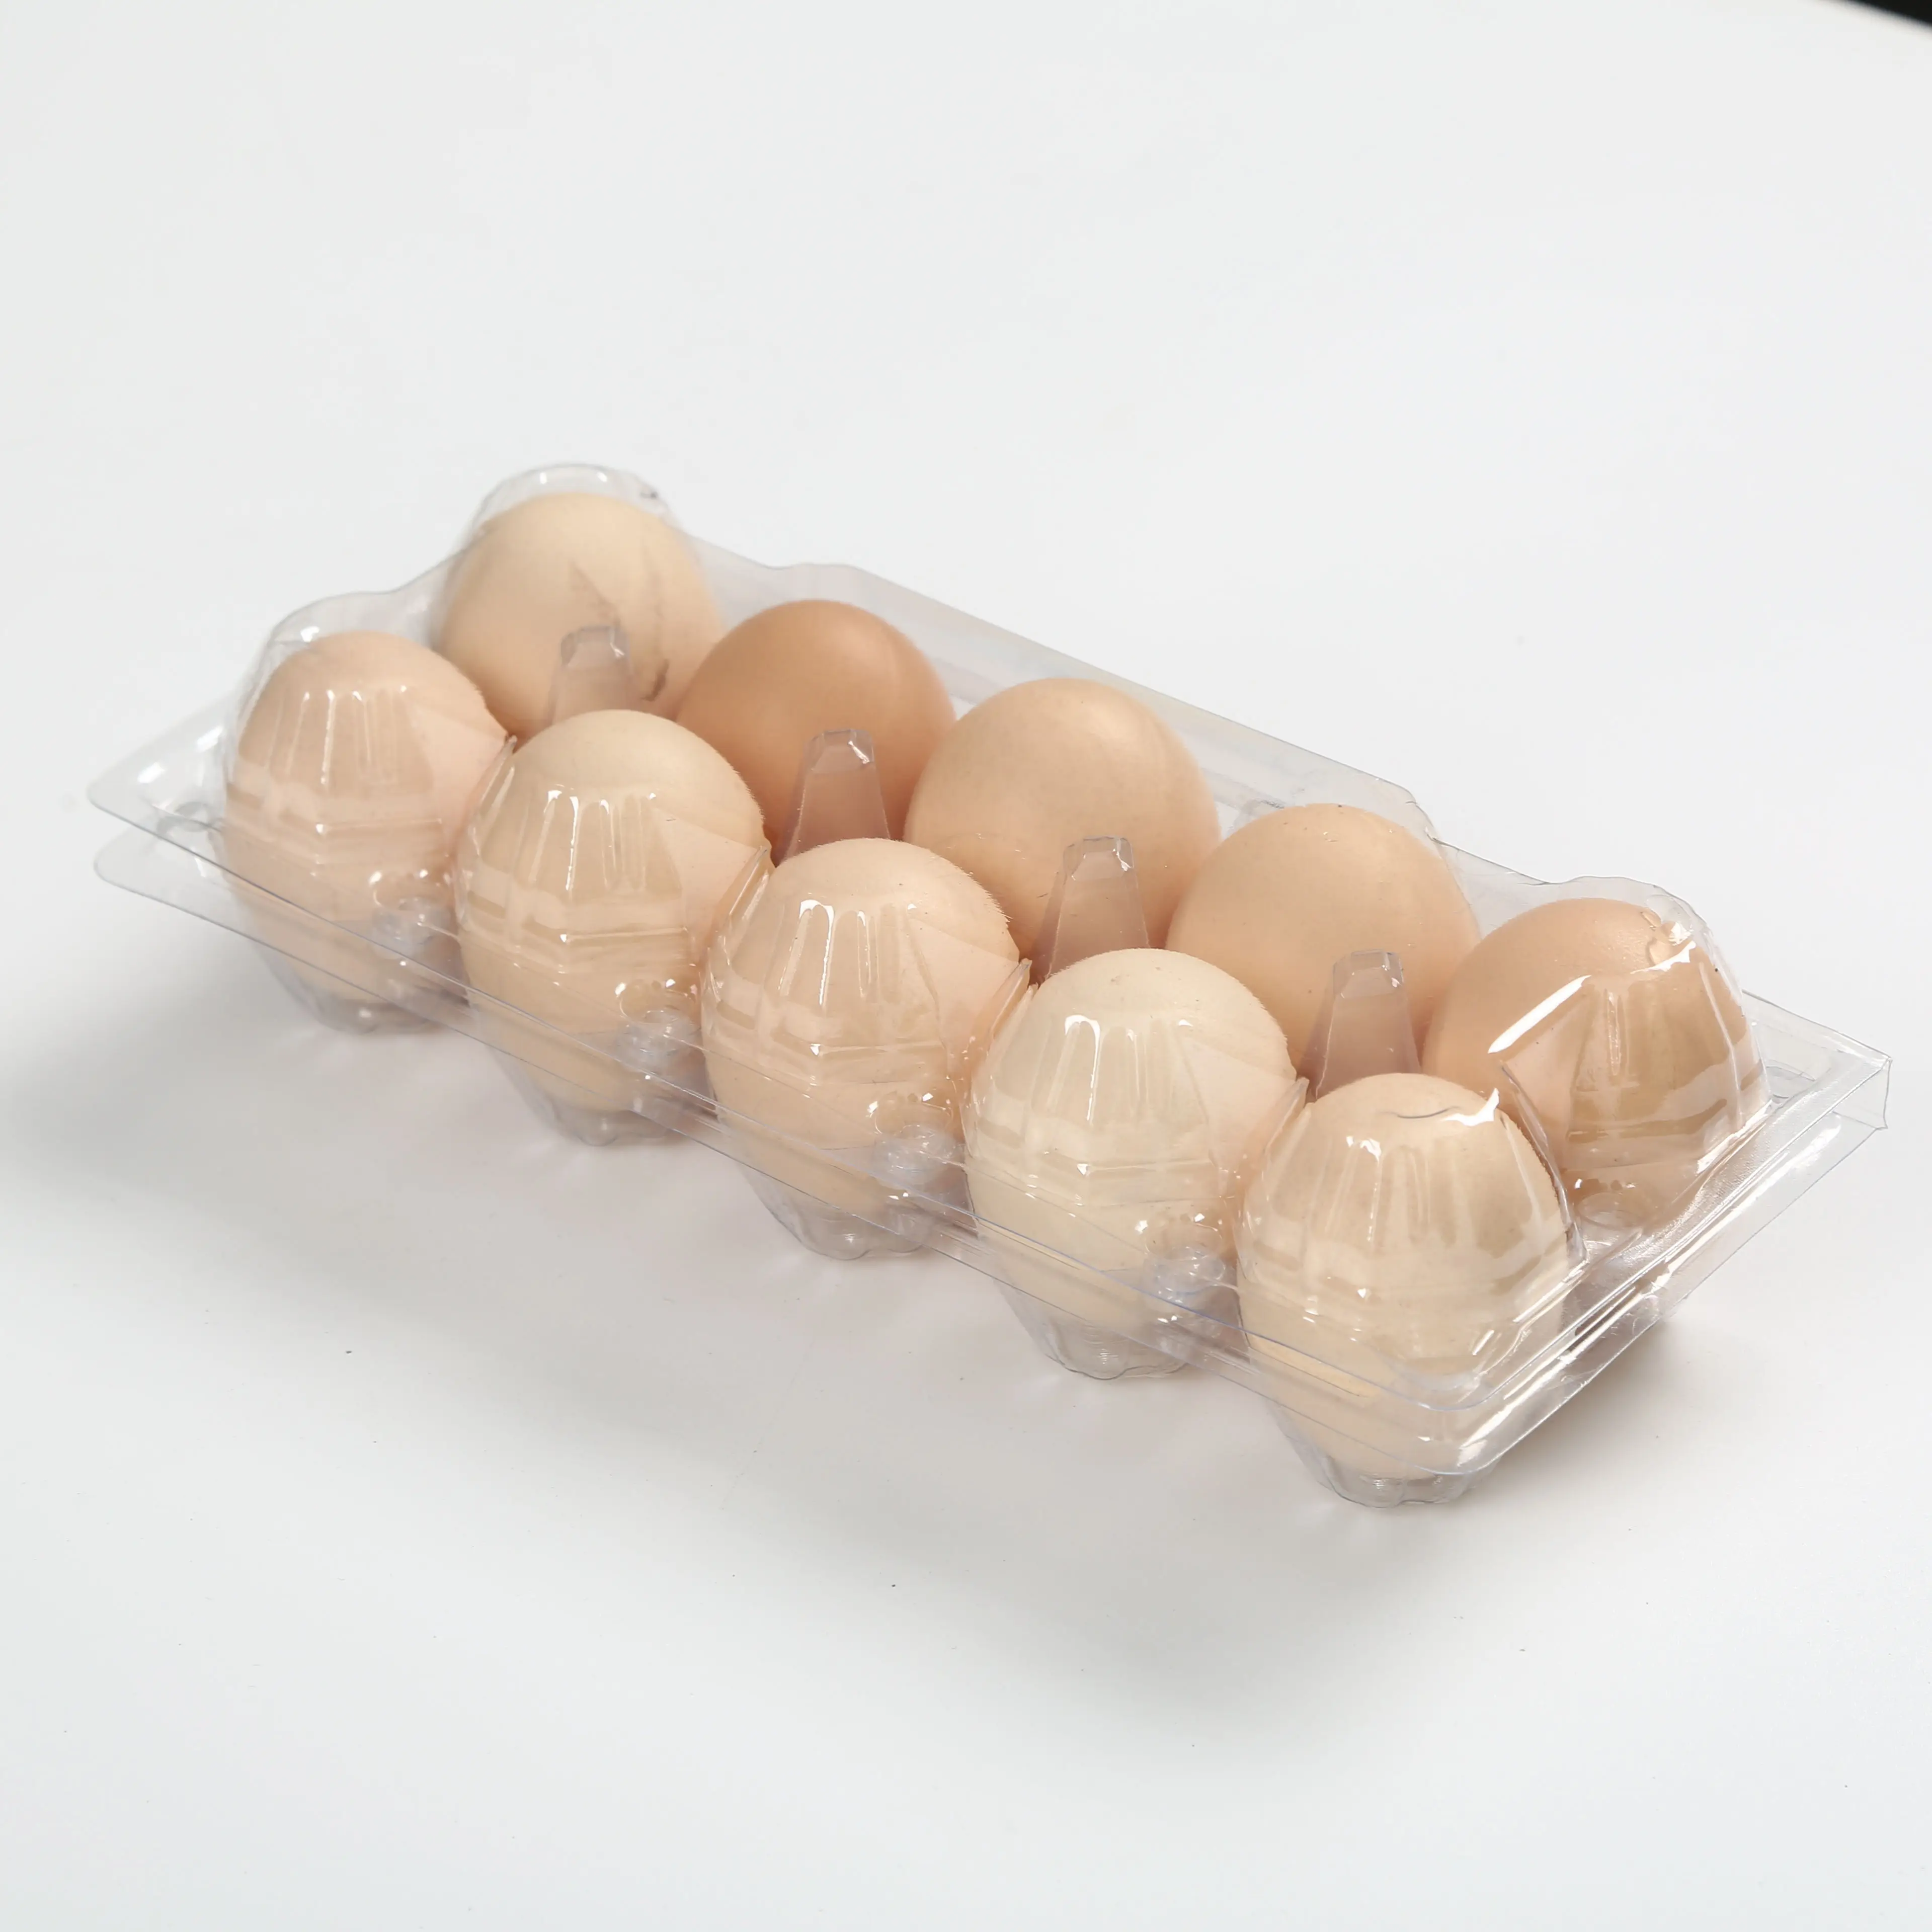 Bandeja de plástico transparente para huevos, envase de plástico PET con 10 agujeros, material reciclado